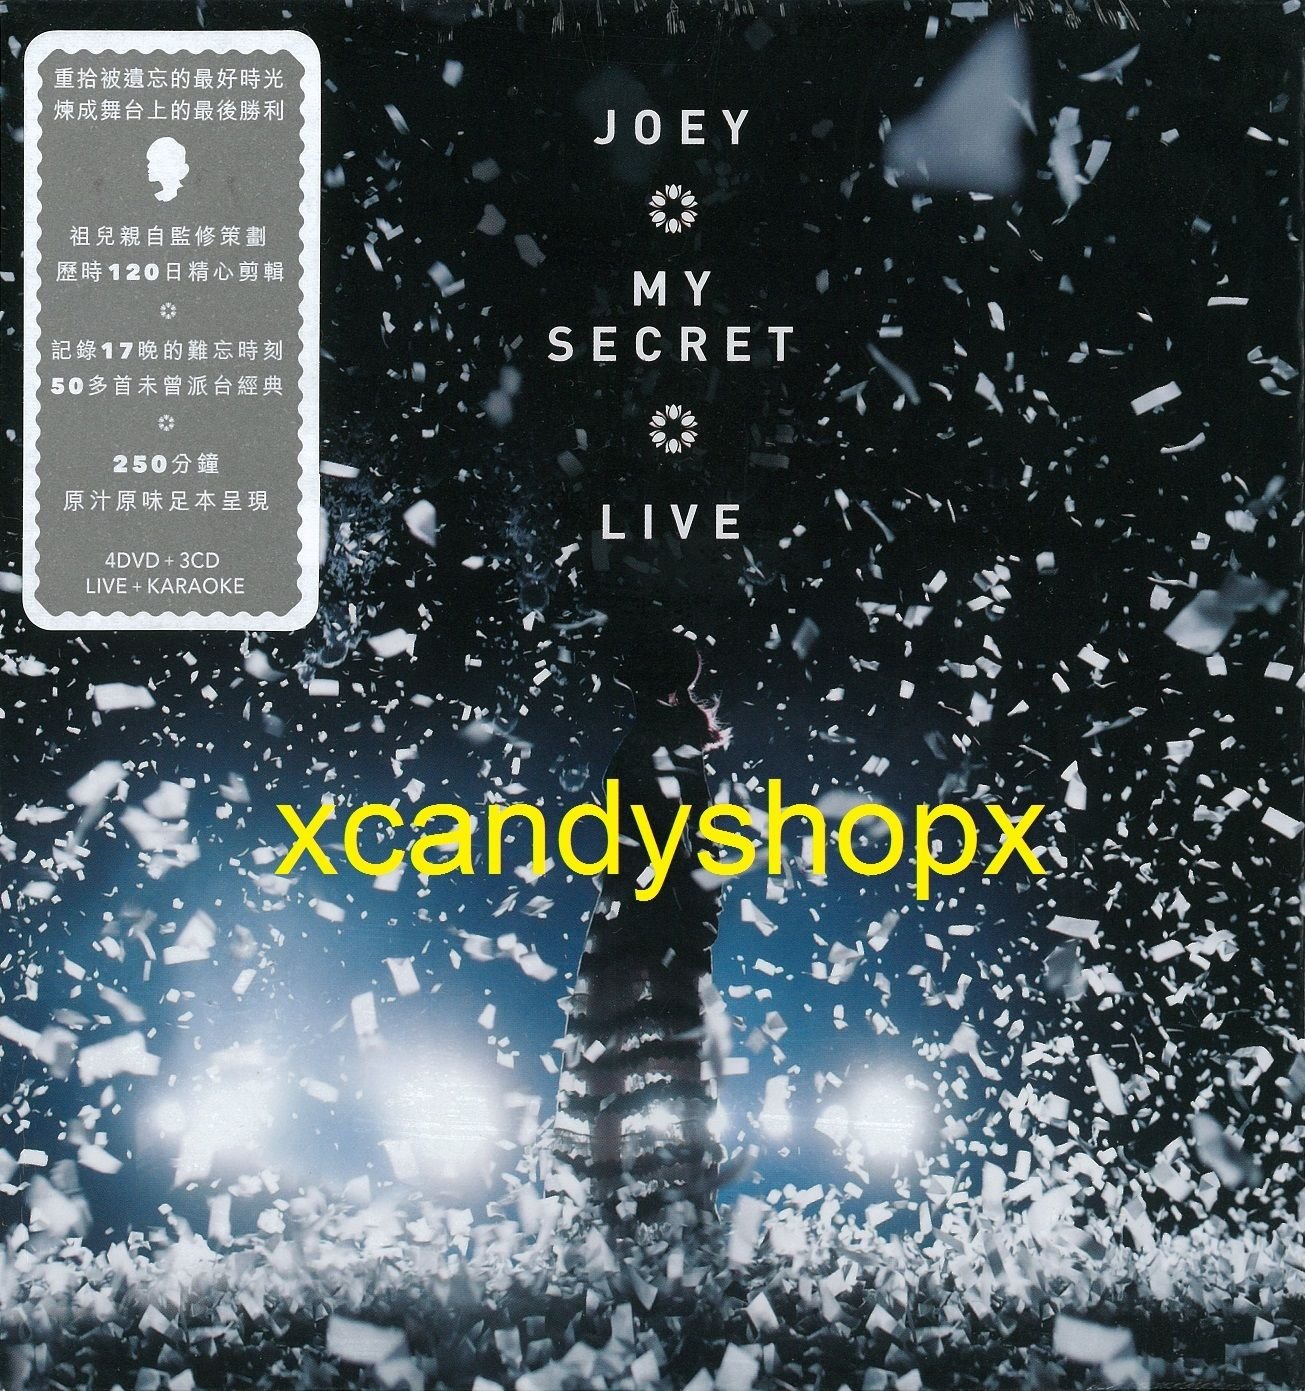 JOEY YUNG å®¹ç¥�å�� My Secret Live 2017 4DVD+3CD Hong Kong edition